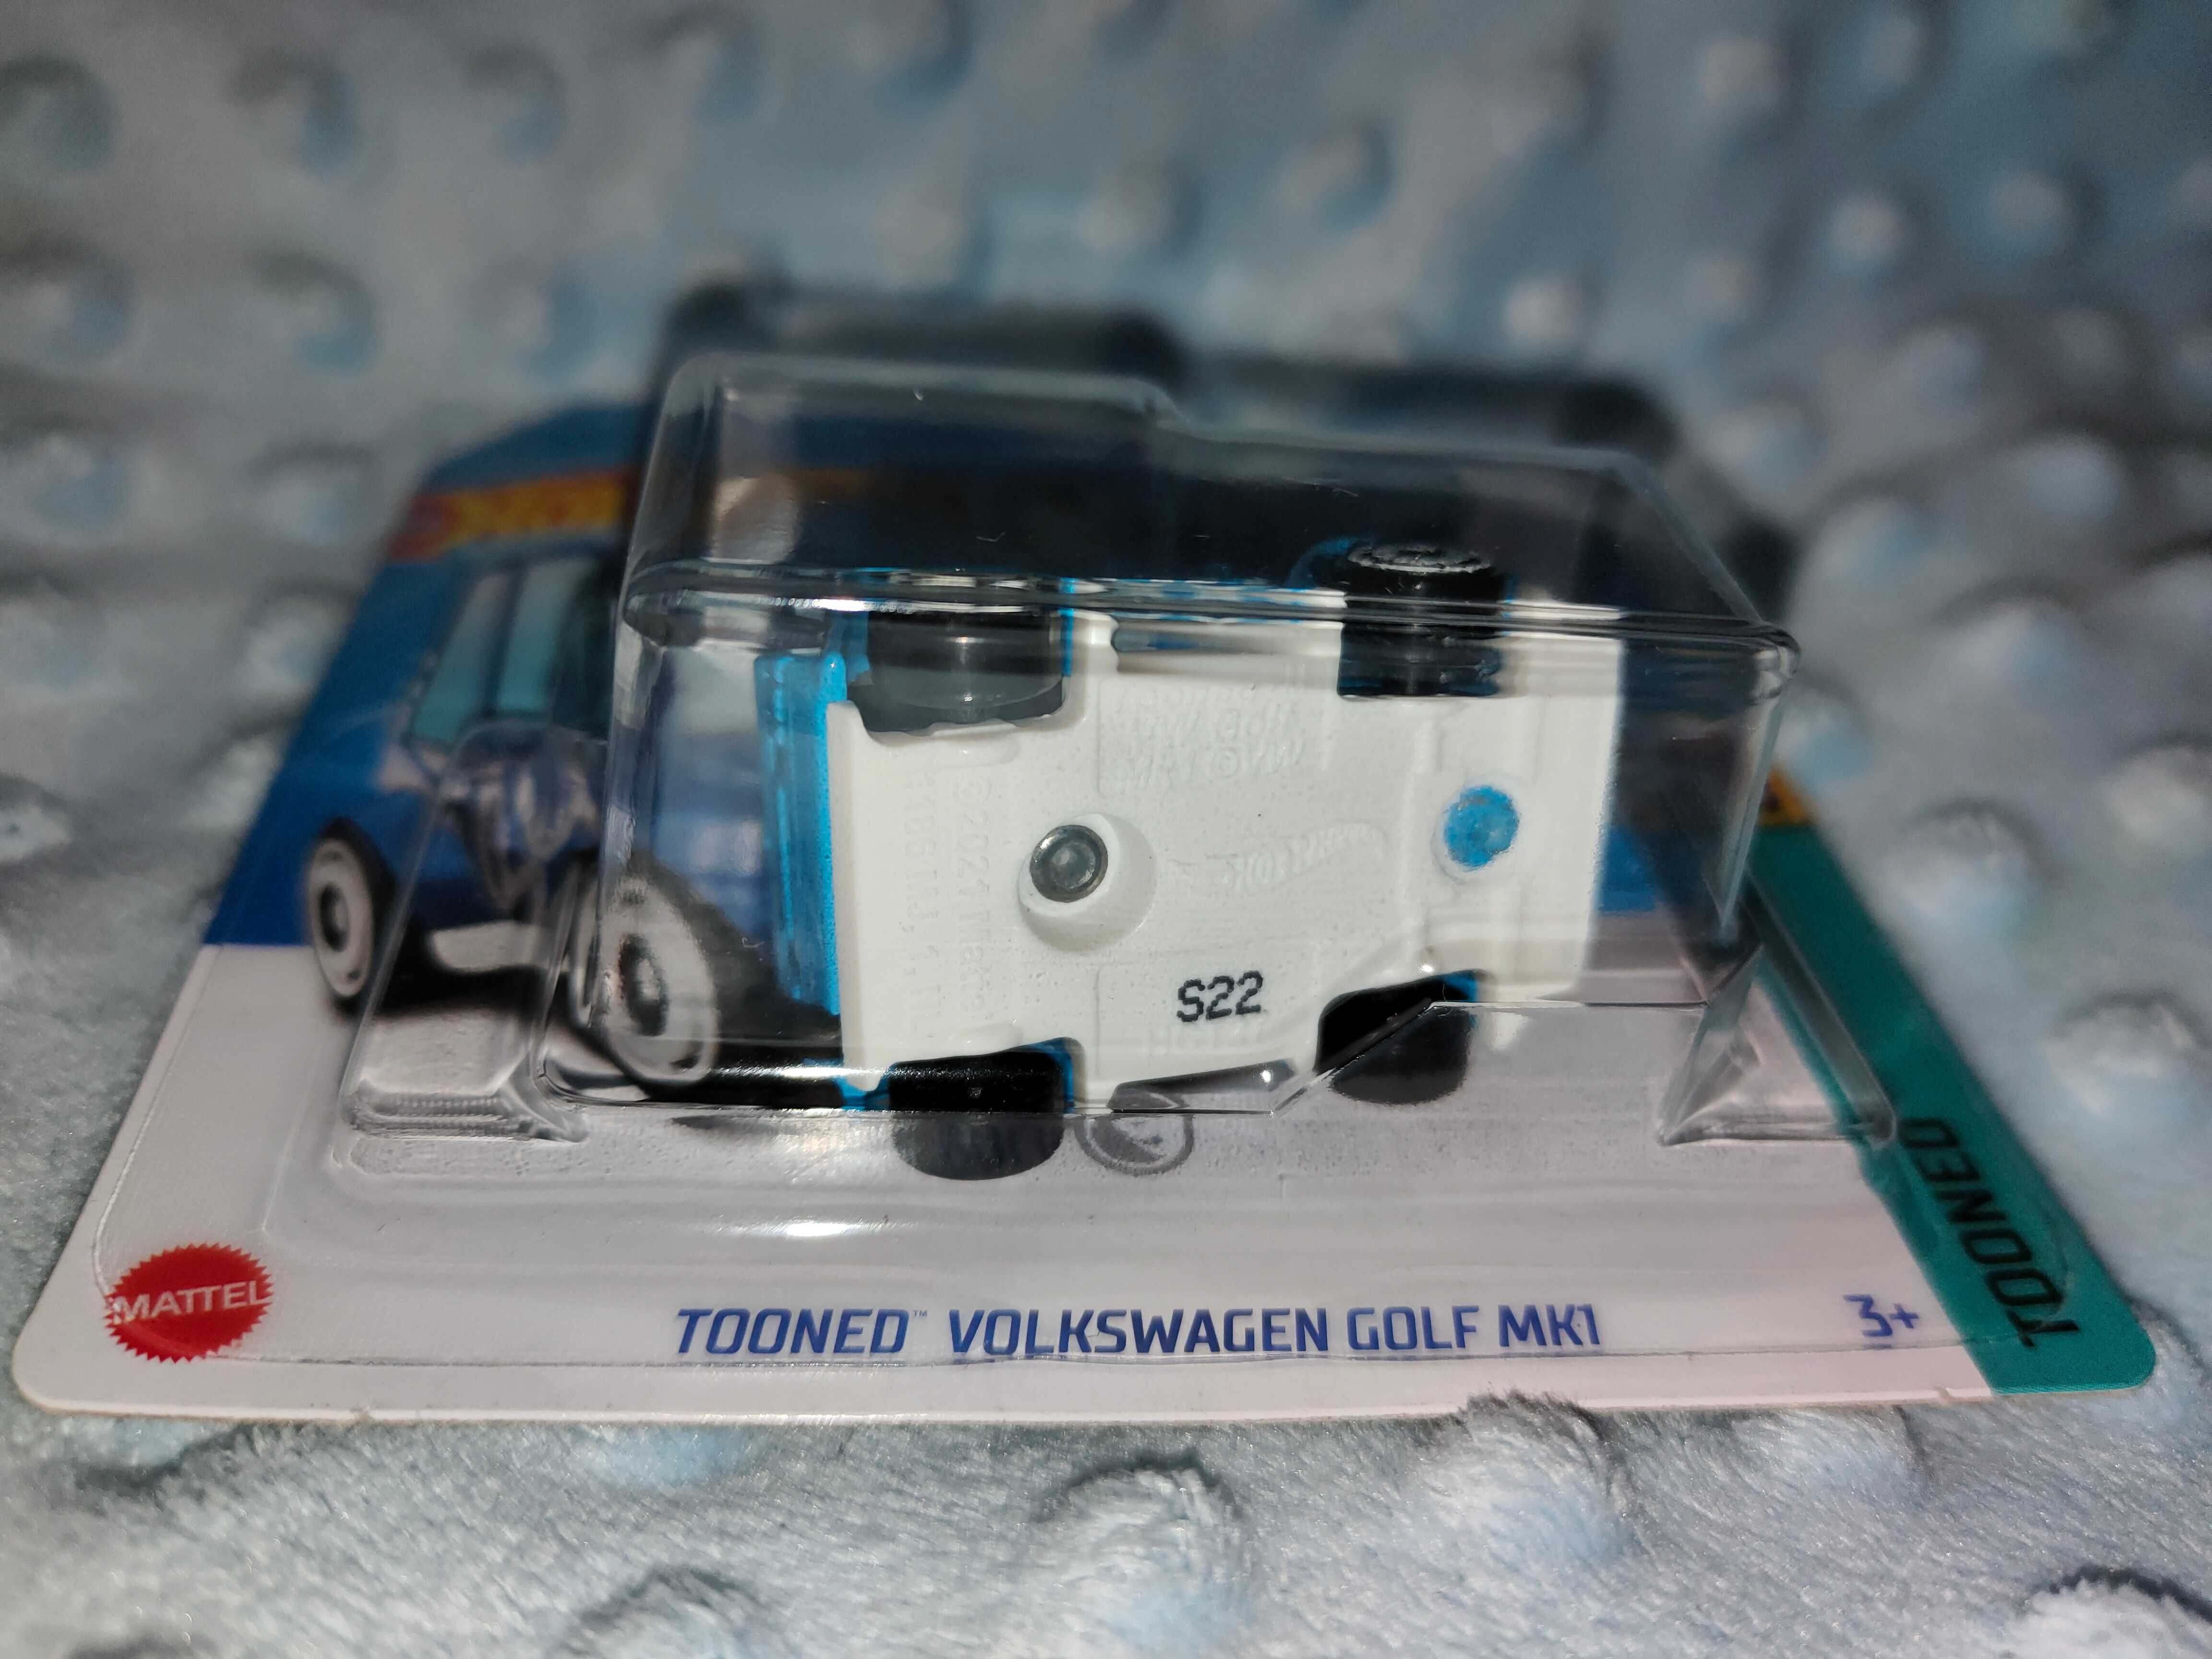 Tooned Volkswagen Golf MKI TH Treasure Hunt